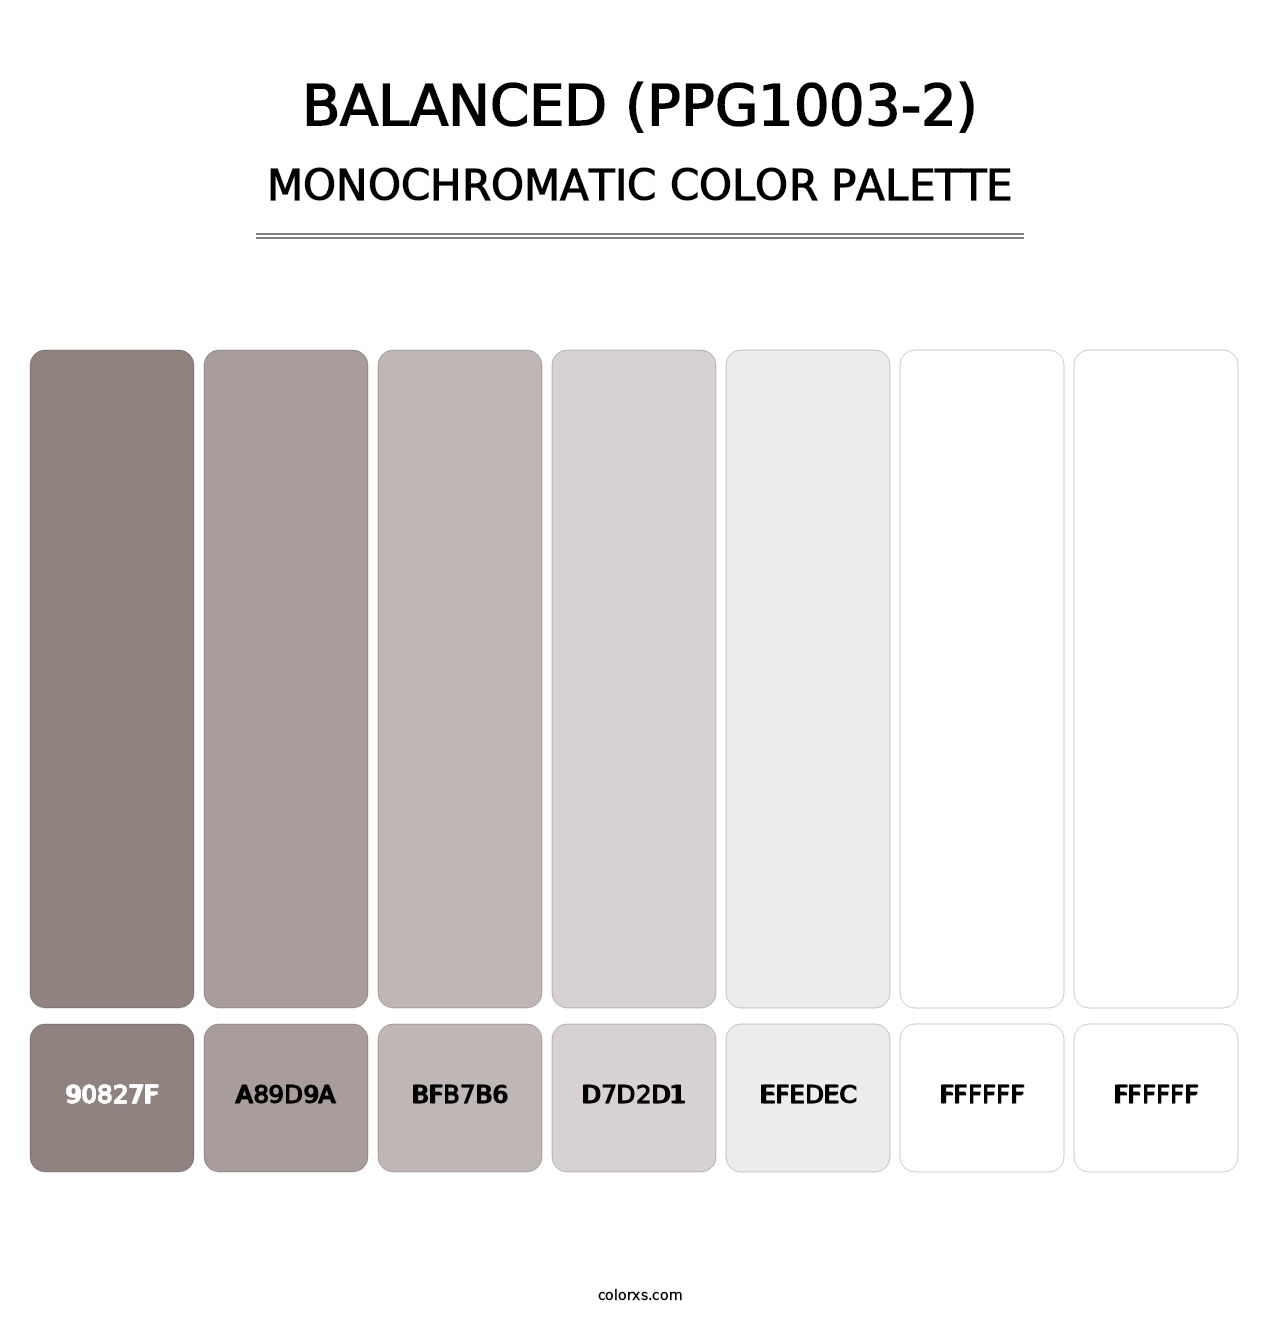 Balanced (PPG1003-2) - Monochromatic Color Palette